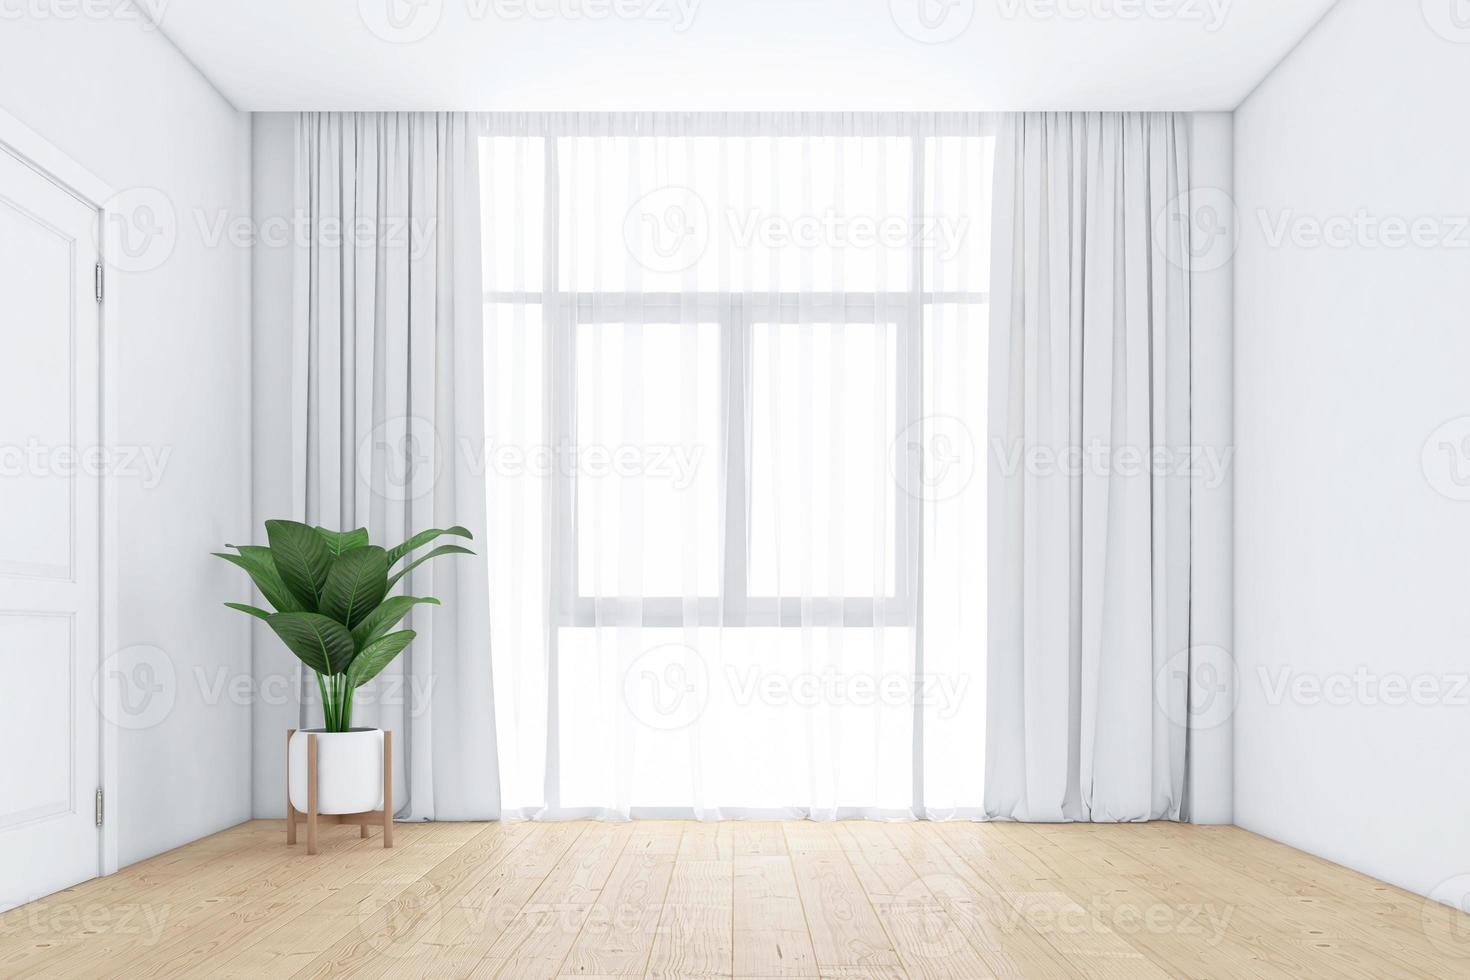 quarto vazio com janelas e cortinas brancas, piso de madeira. renderização em 3D foto